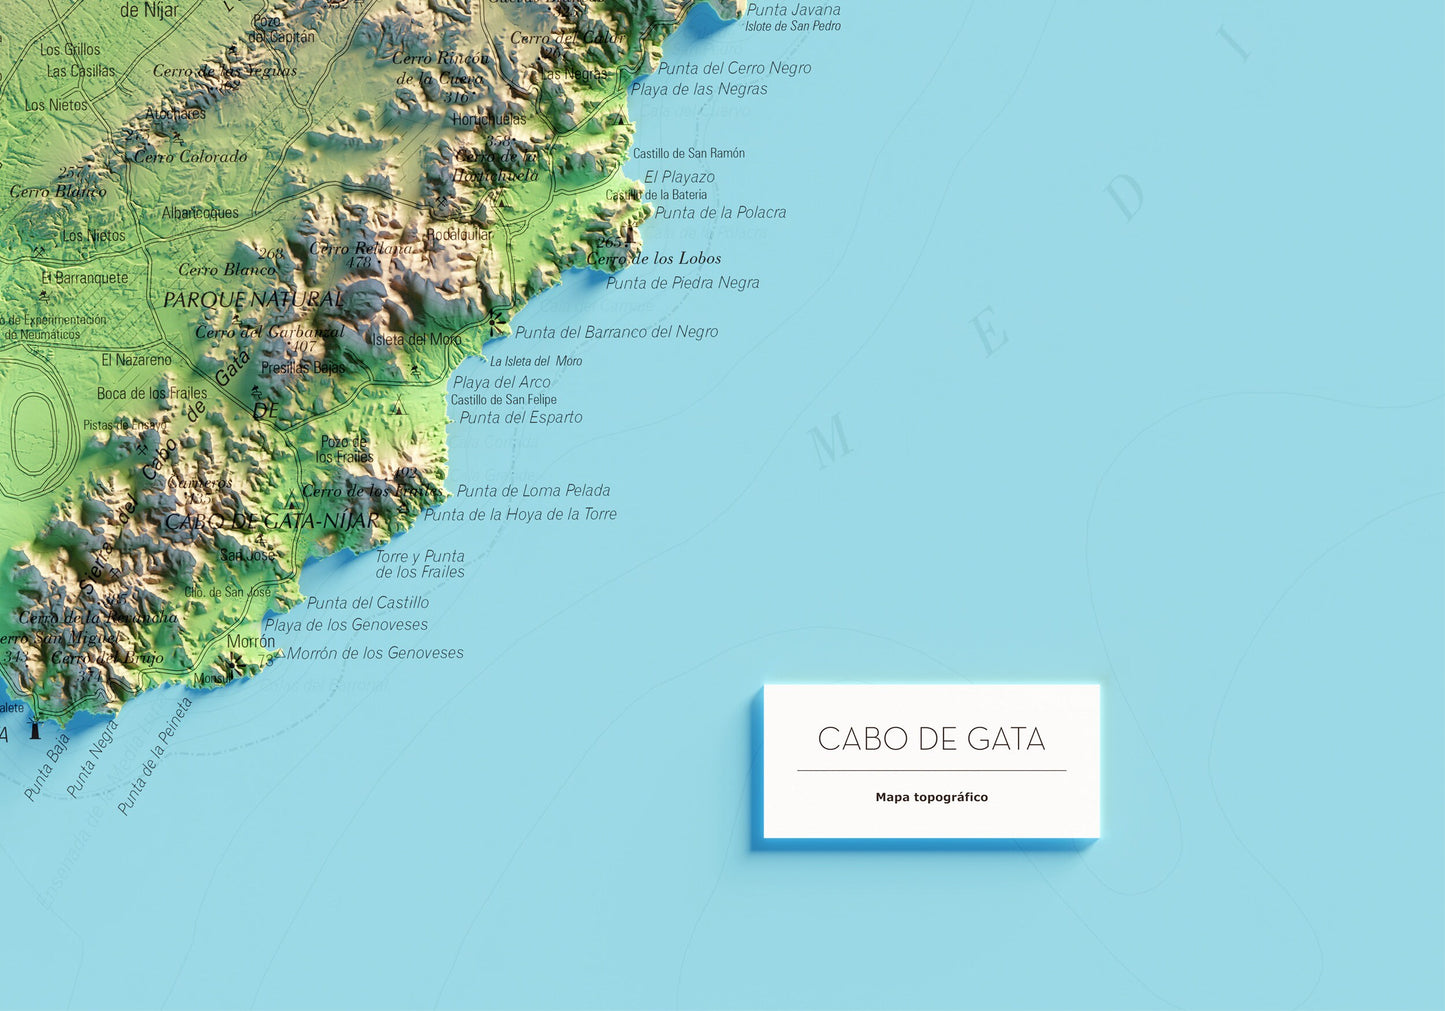 CABO DE GATA. Mapa topográfico.